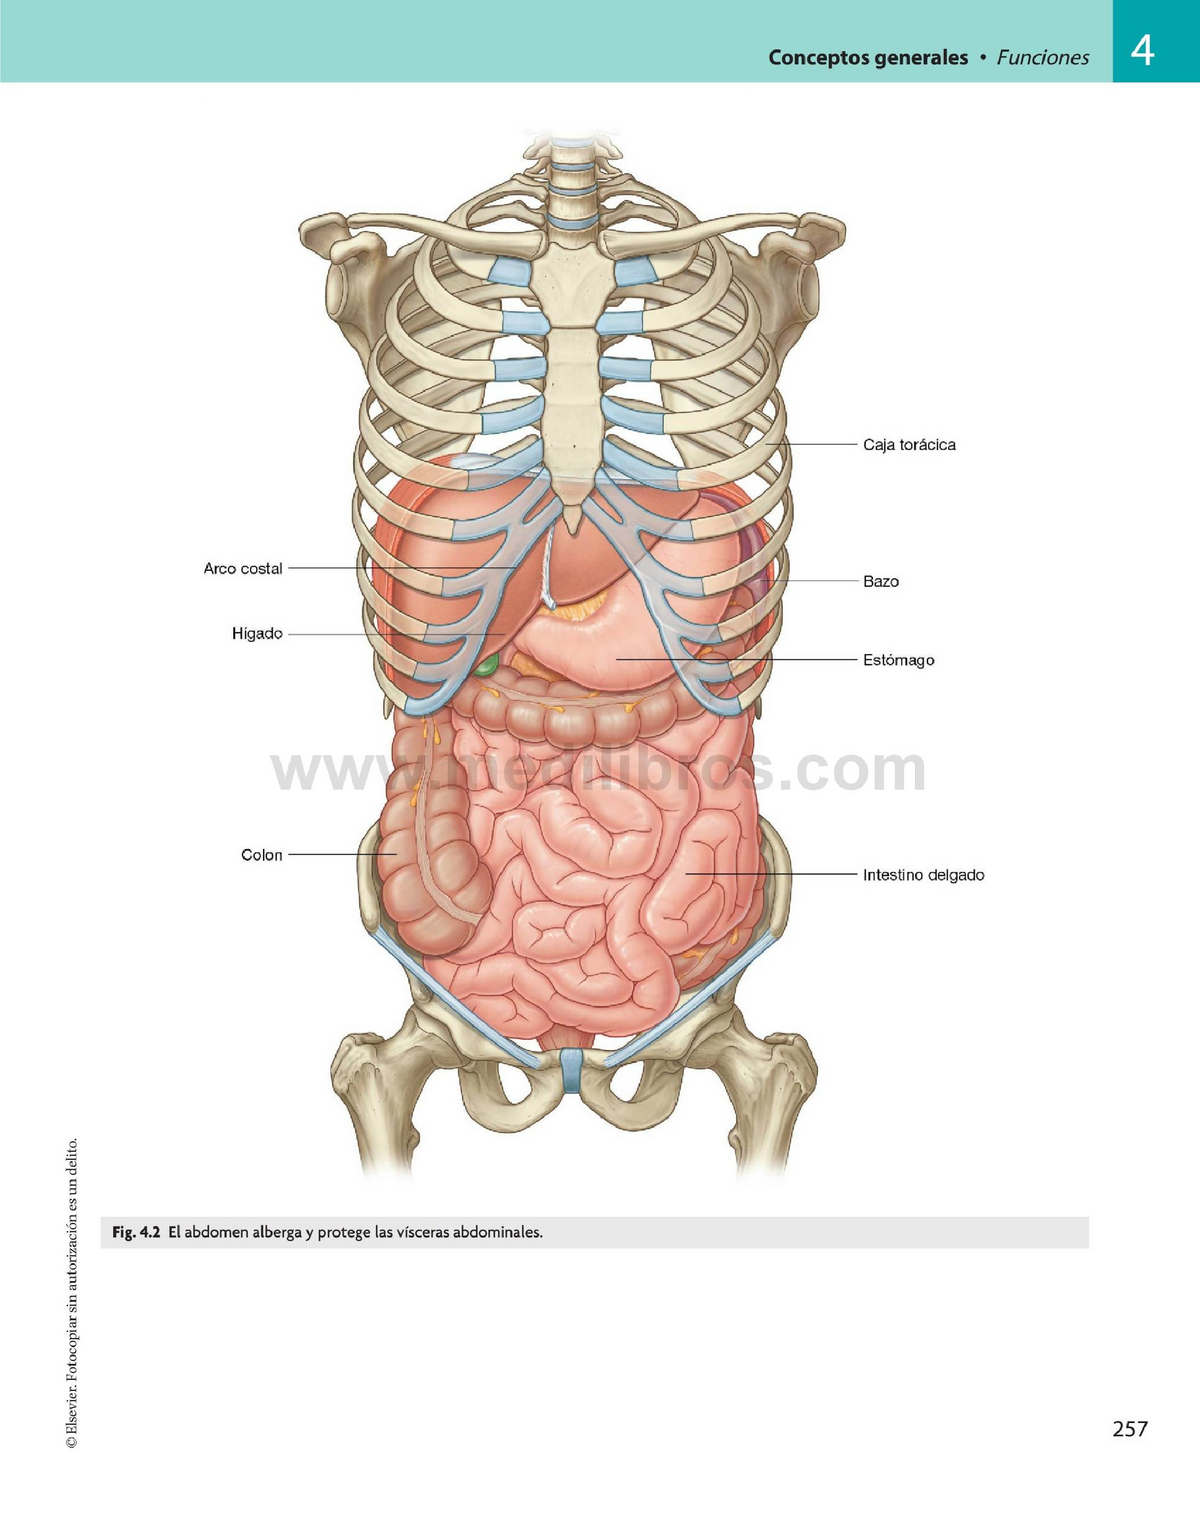 Болит внизу правого ребра. Анатомия брюшной полости с ребрами. Анатомия человека внутренние органы брюшной полости. Схема расположения органов человека в брюшной полости. Анатомический атлас органы брюшной полости.